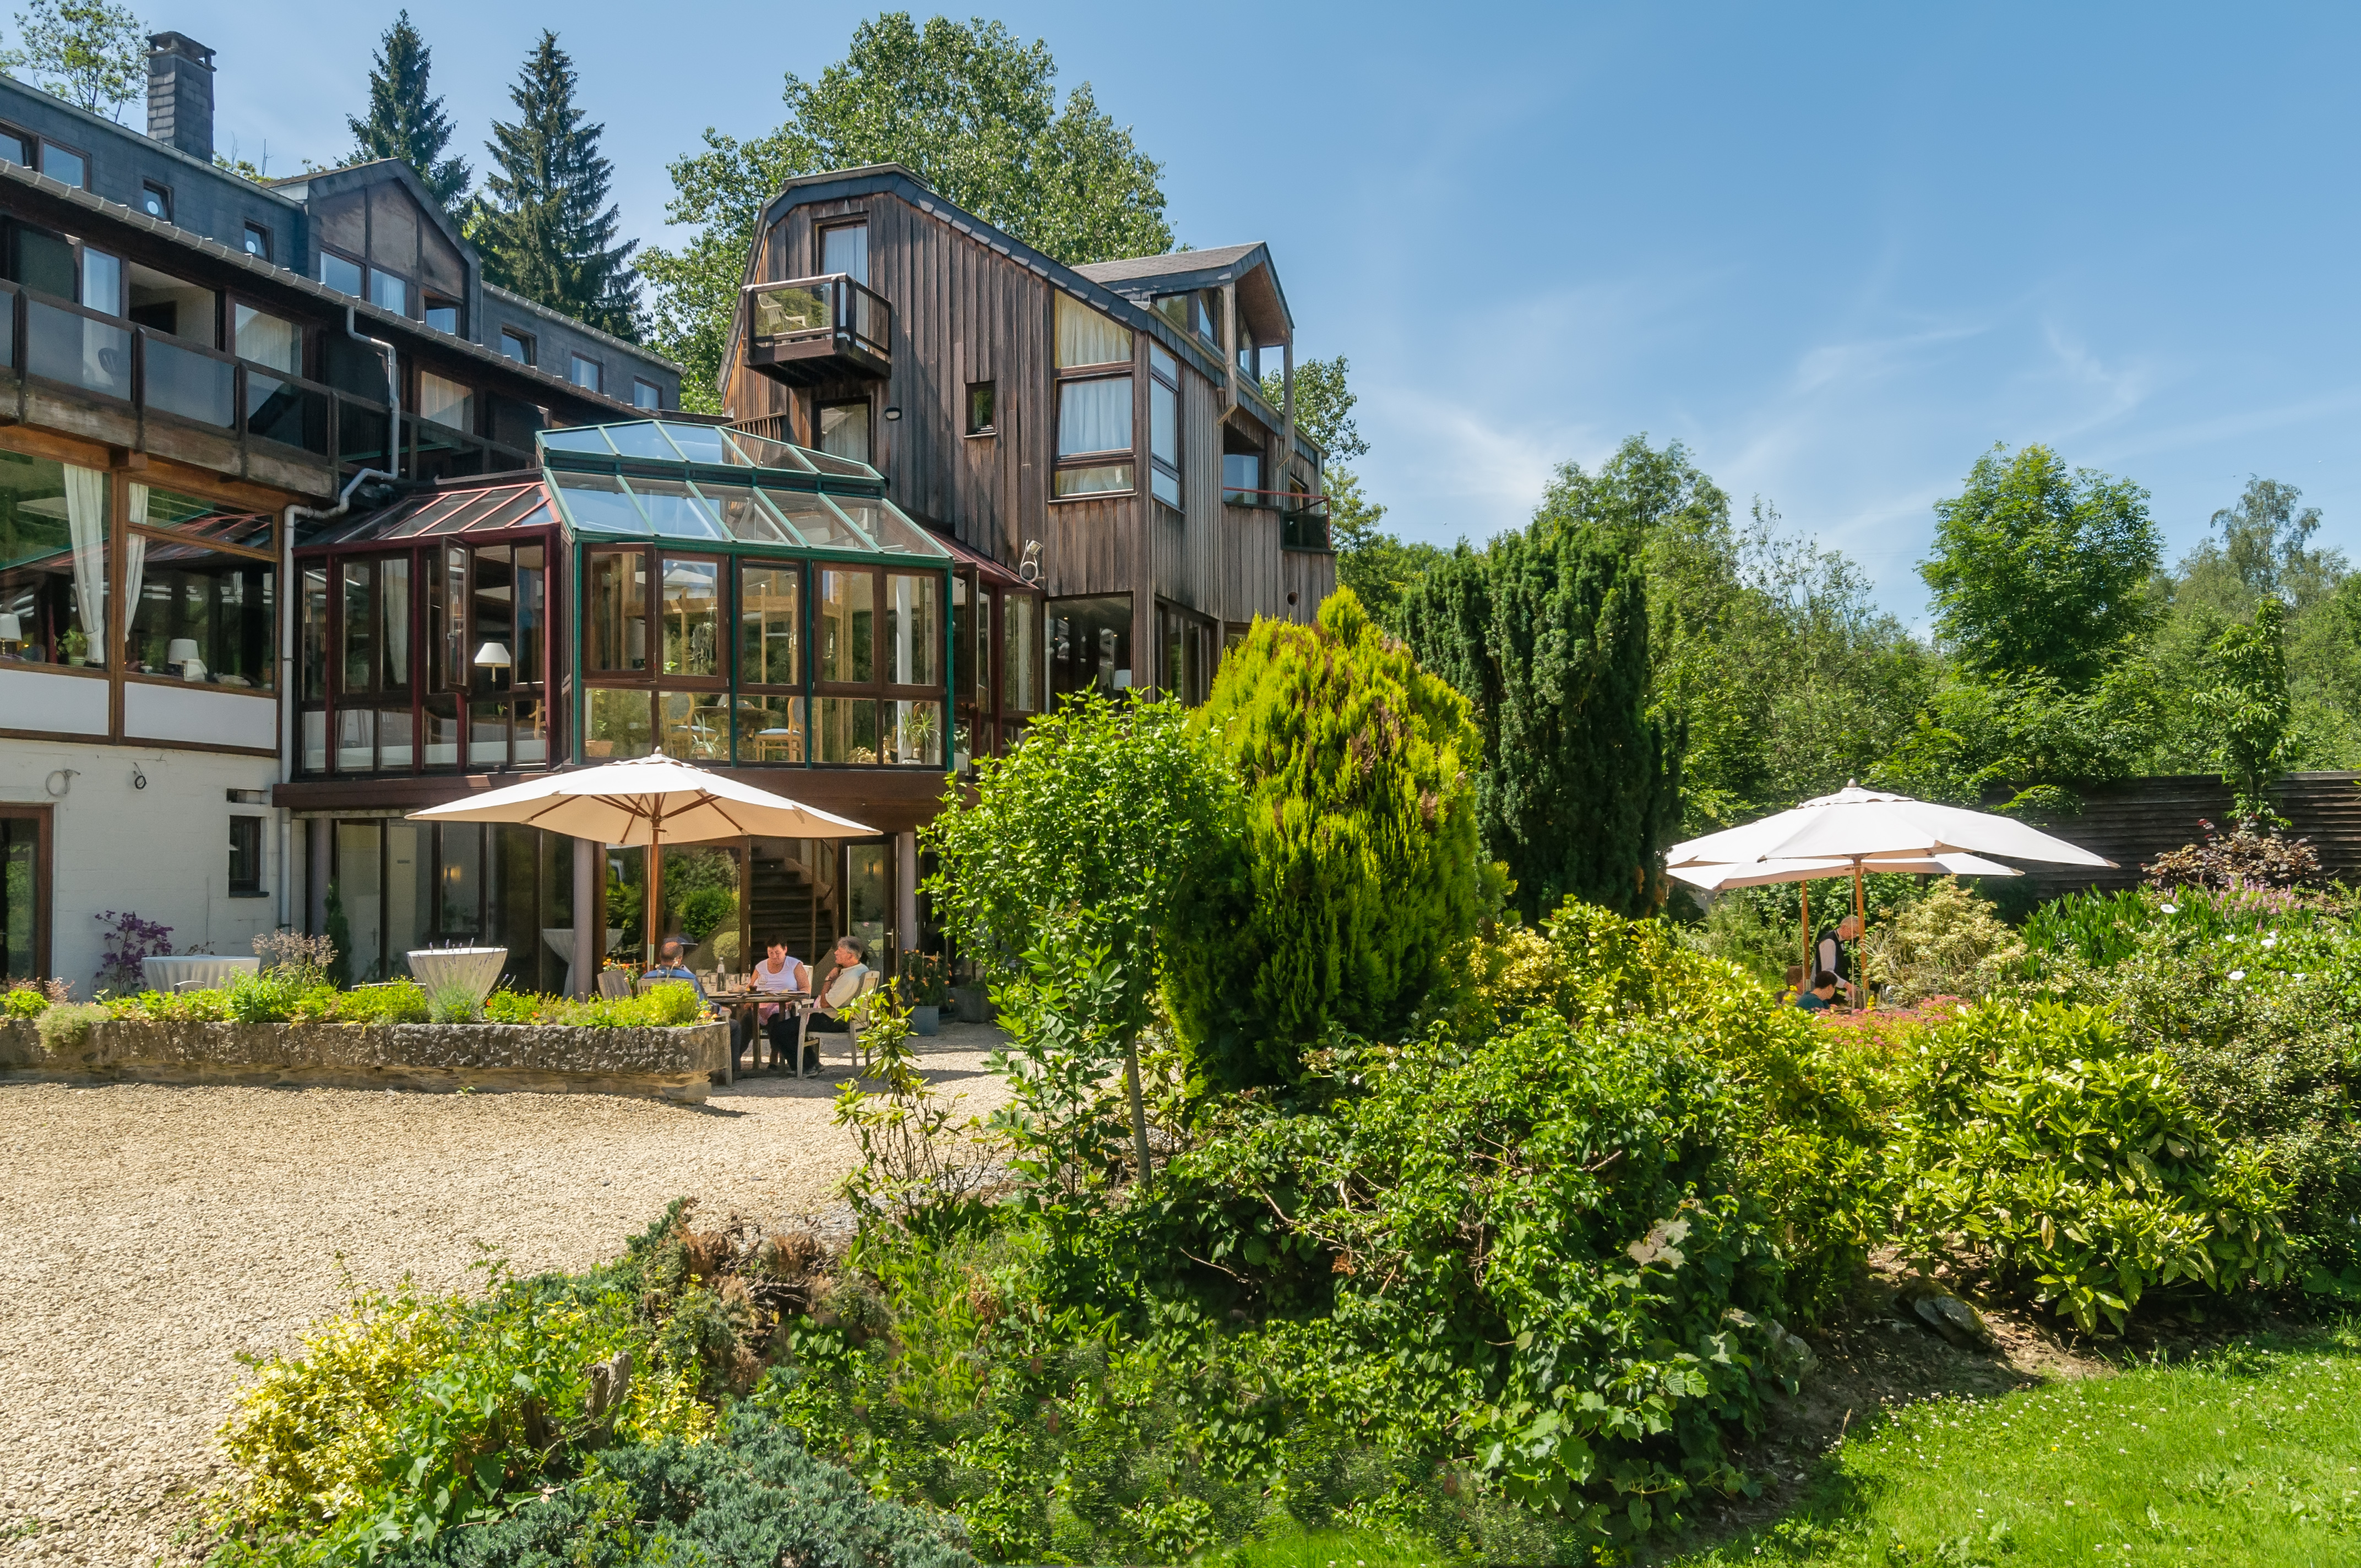 Discover the Hostellerie La Claire Fontaine in La Roche-en-Ardenne